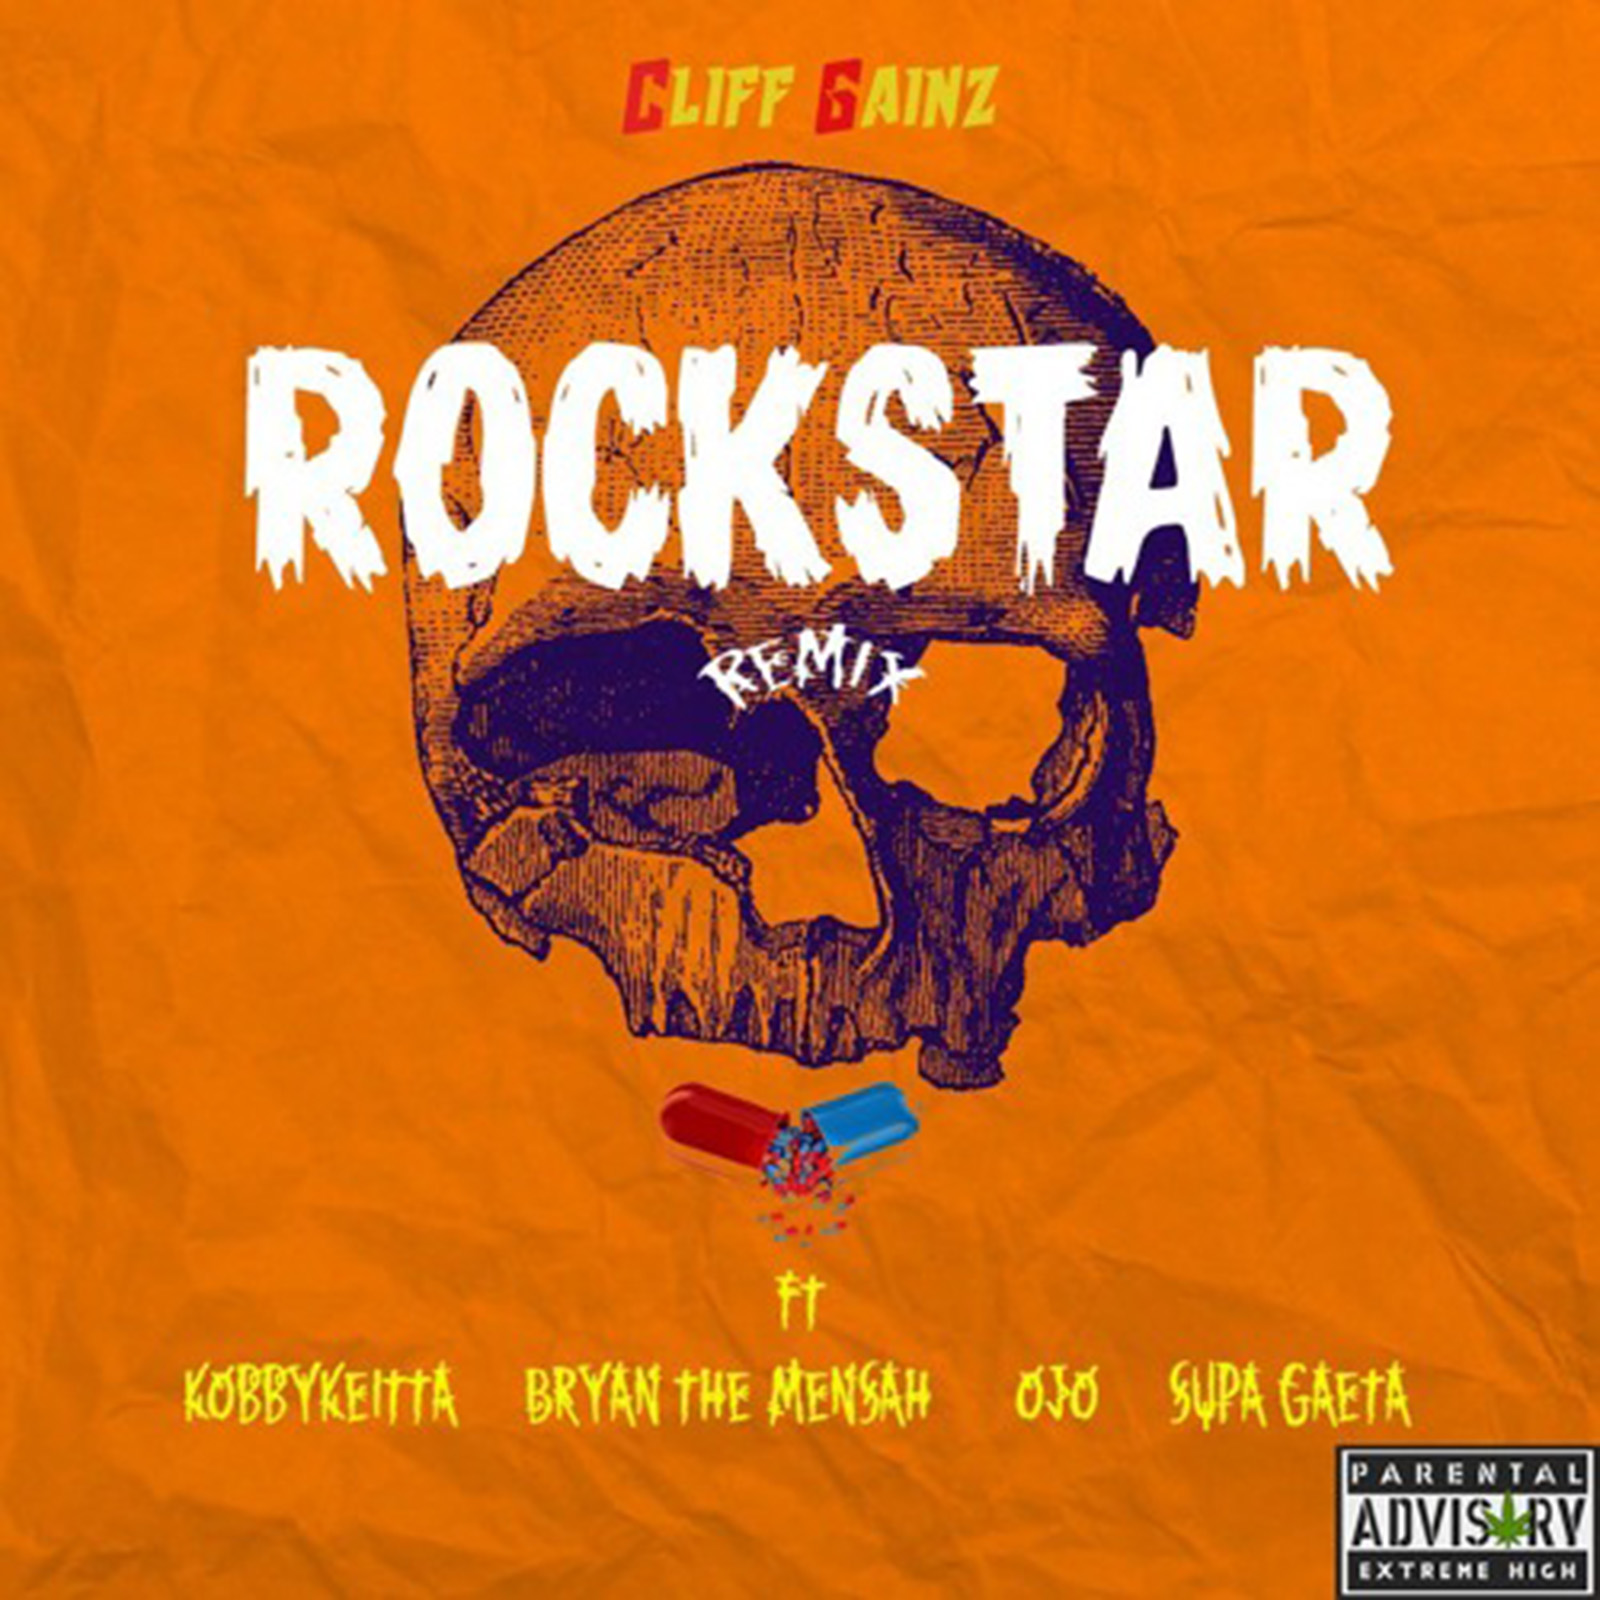 Rockstar Remix by Cliff Gainz feat. Ojo, Kobby Kieta, BRYAN THE MENSAH & SUPA GAETA